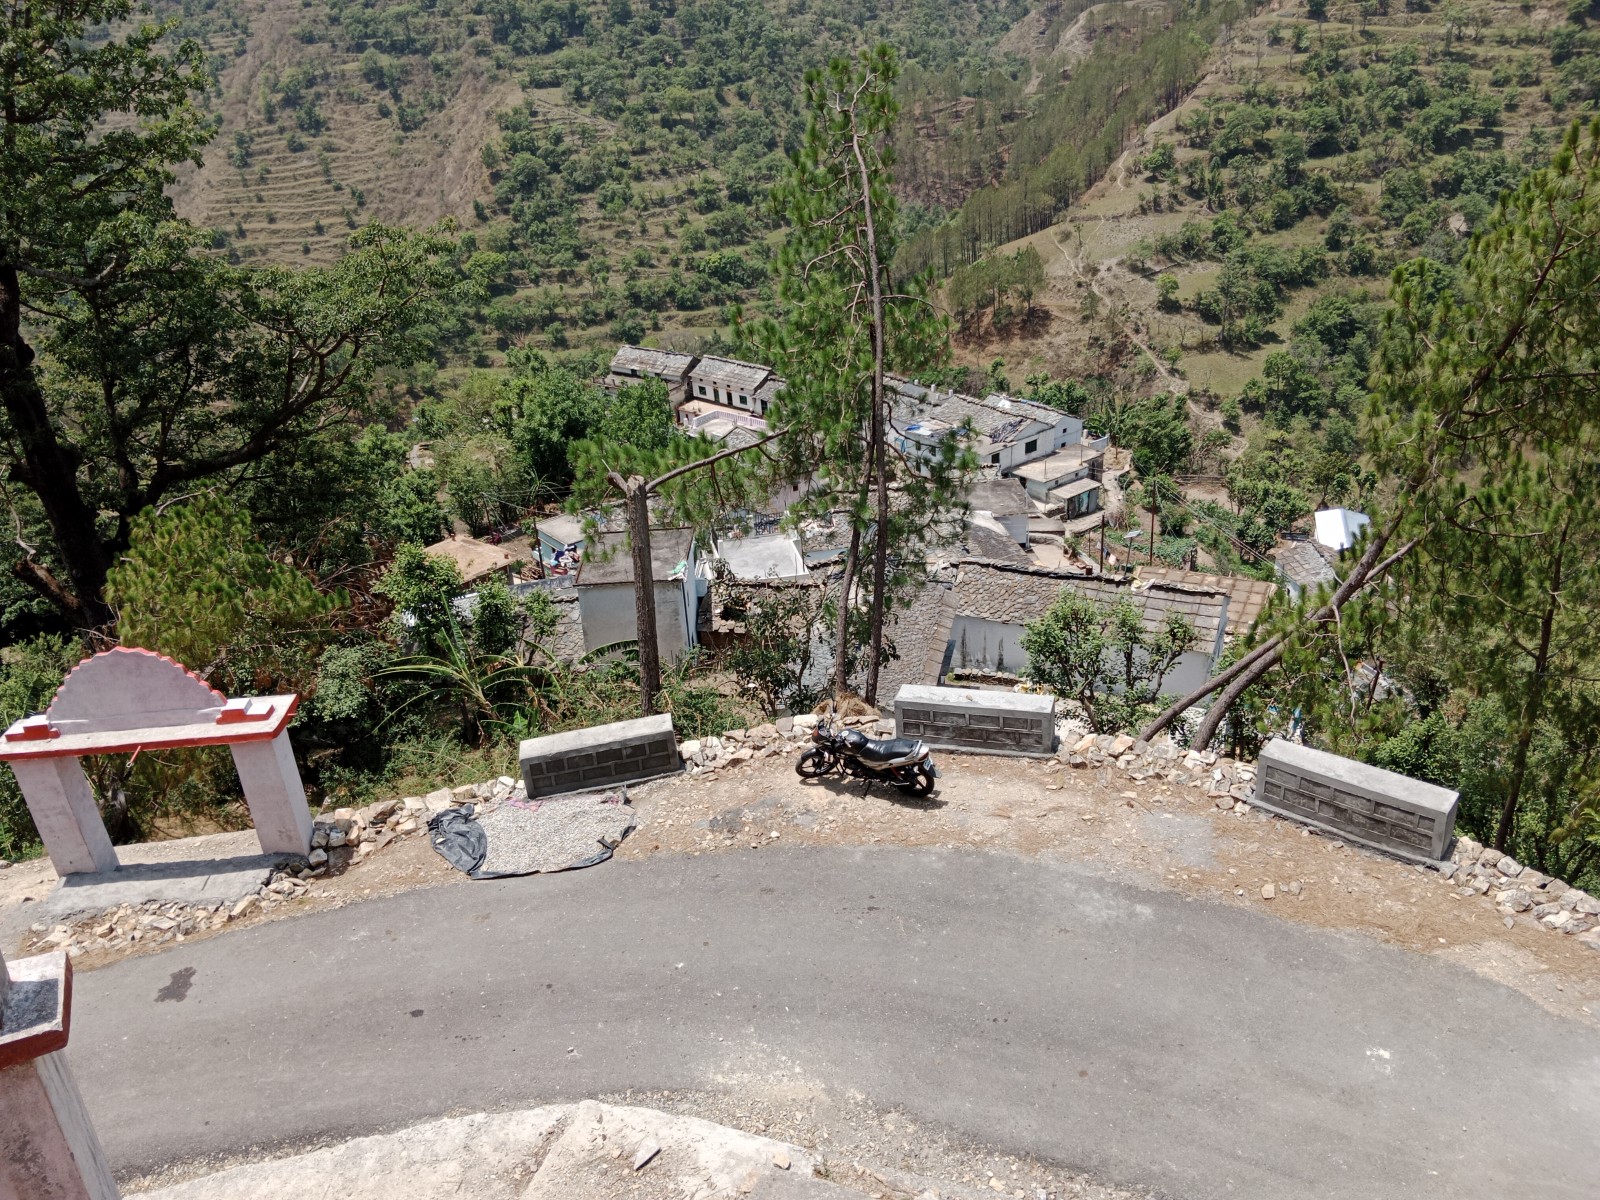 Thalmarh village, Almora